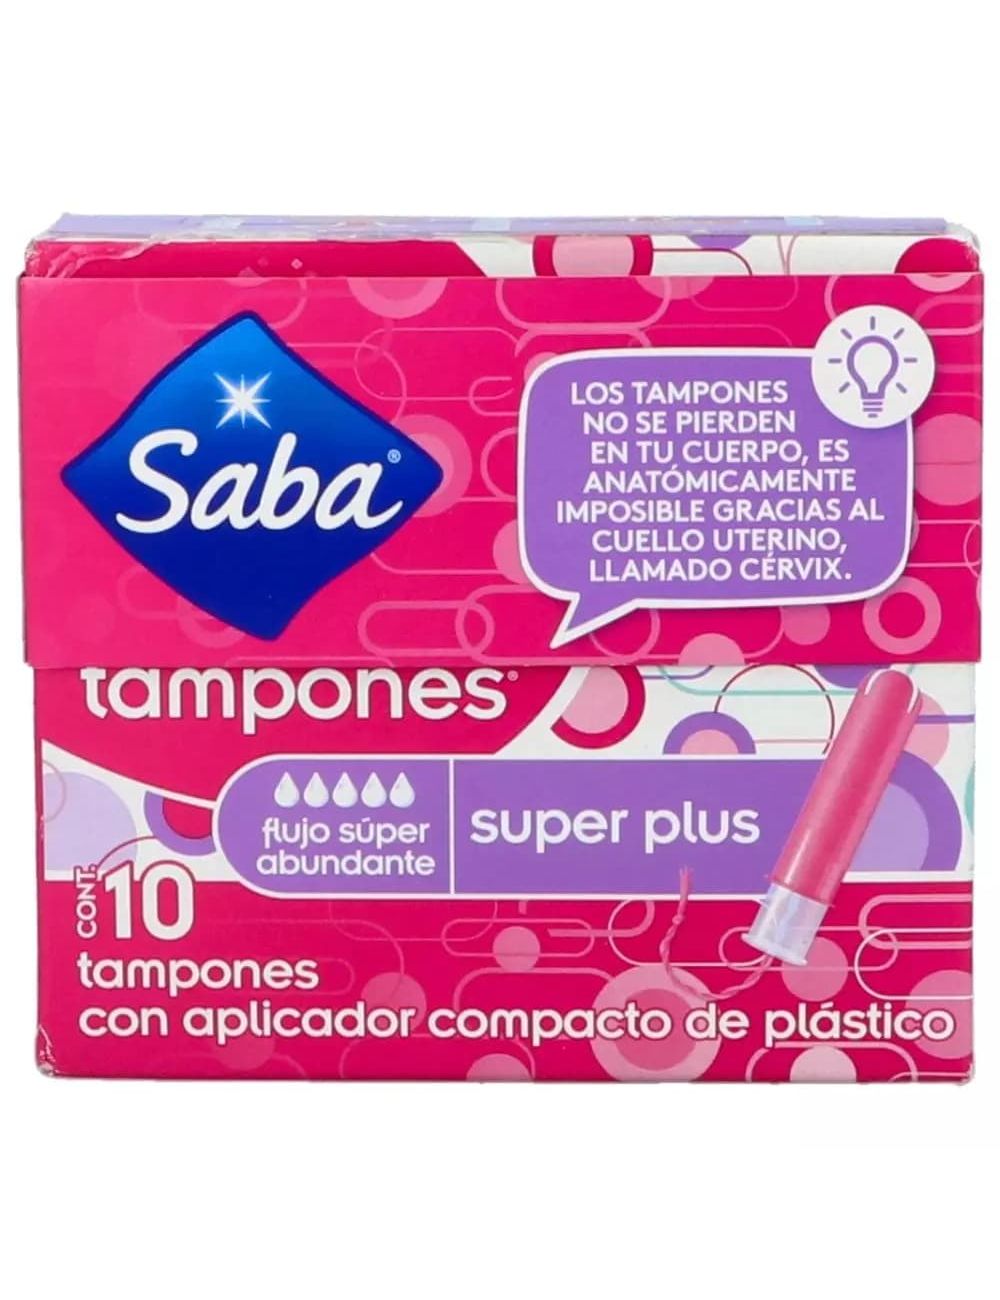 Tampones Kotex, Saba, Tampax Super Plus | Solo Farmalisto MX